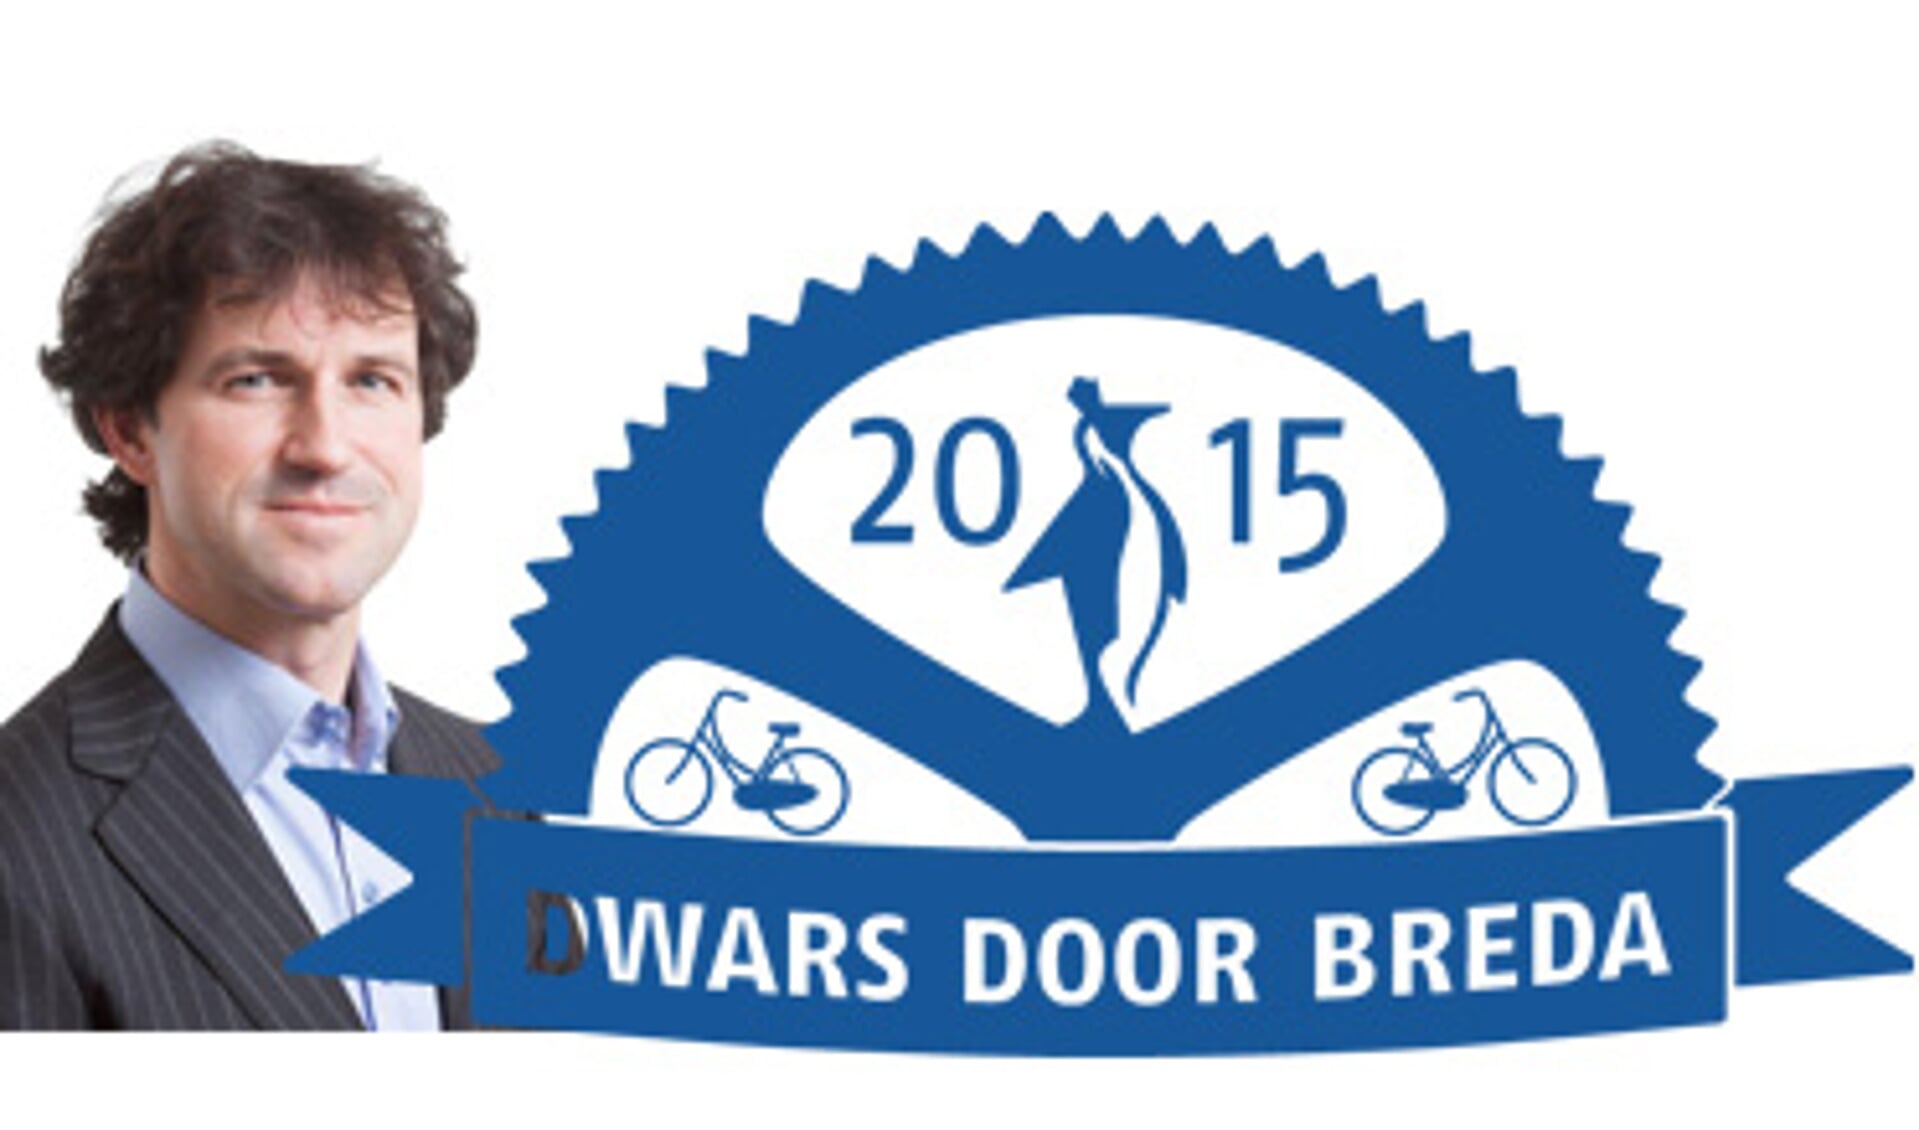 Willem de Keijzer en het logo van de fietstocht.